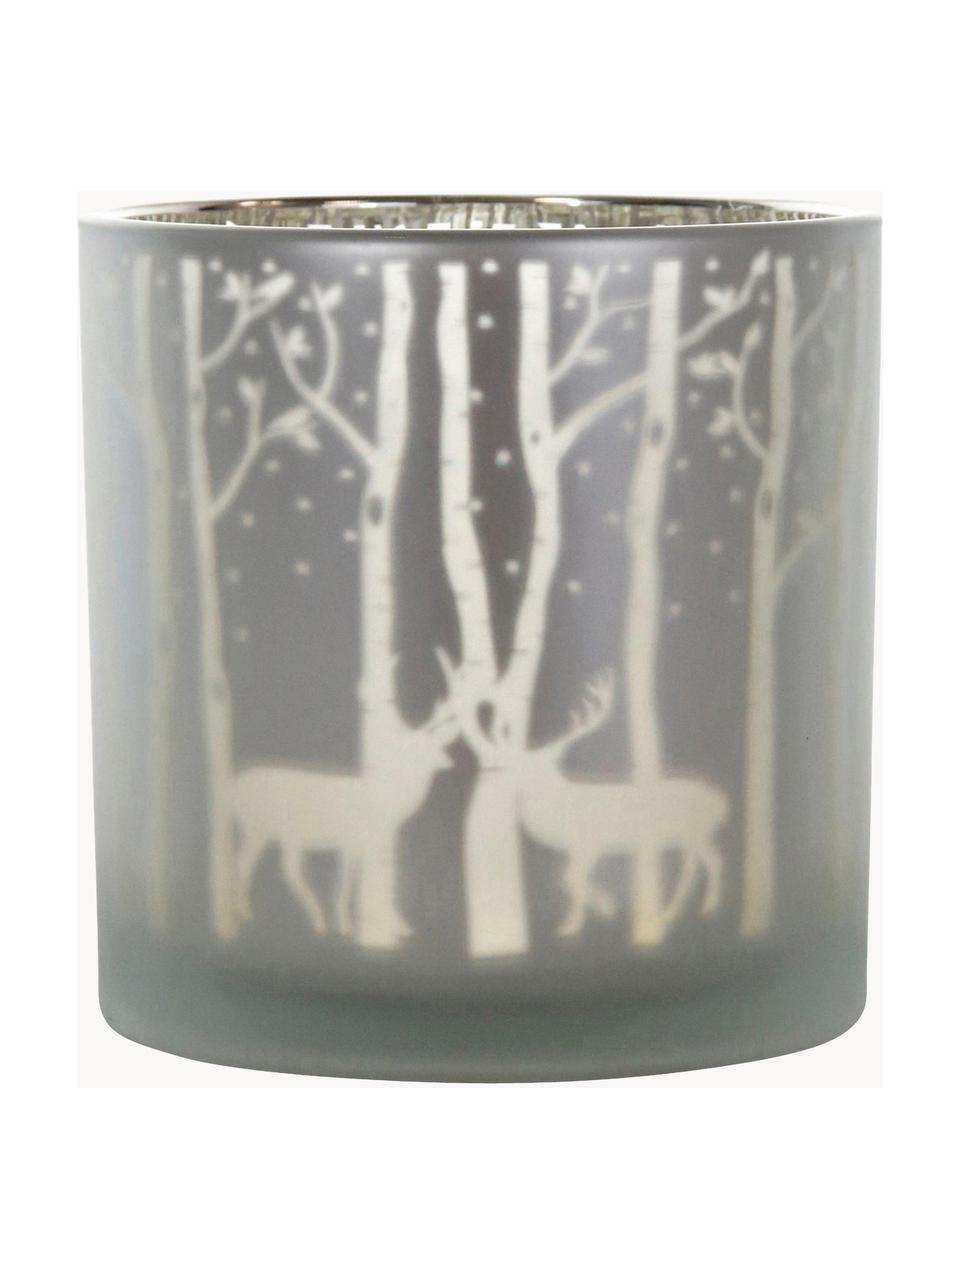 Kleines Windlicht Forest, Glas, Grau, Silberfarben, Ø 15 x H 15 cm